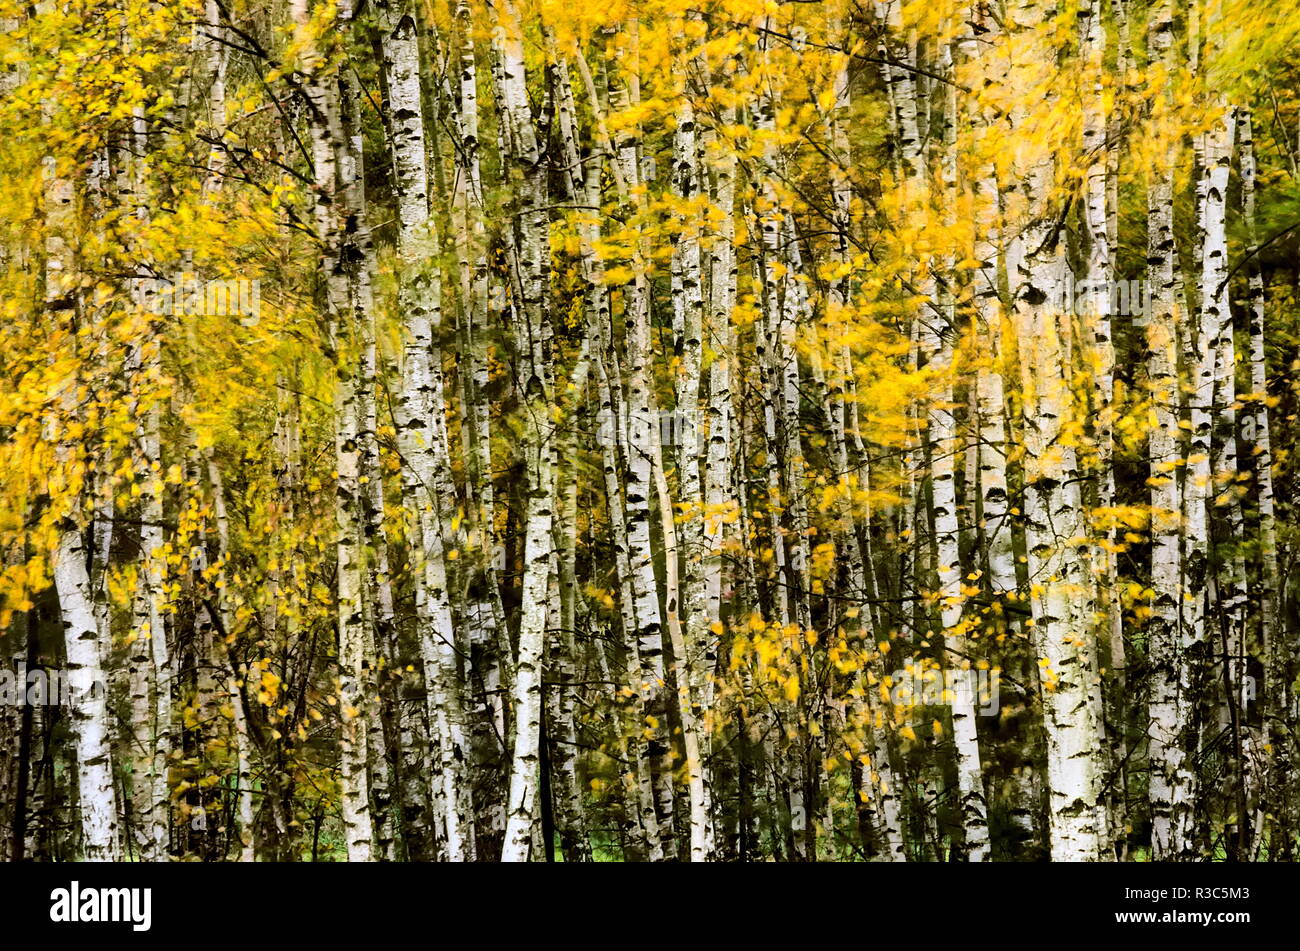 Eine Nahaufnahme von Birken im Herbst. Die Blätter sind absichtlich verwischt eine Art künstlerisches Aussehen zu erstellen. Stockfoto